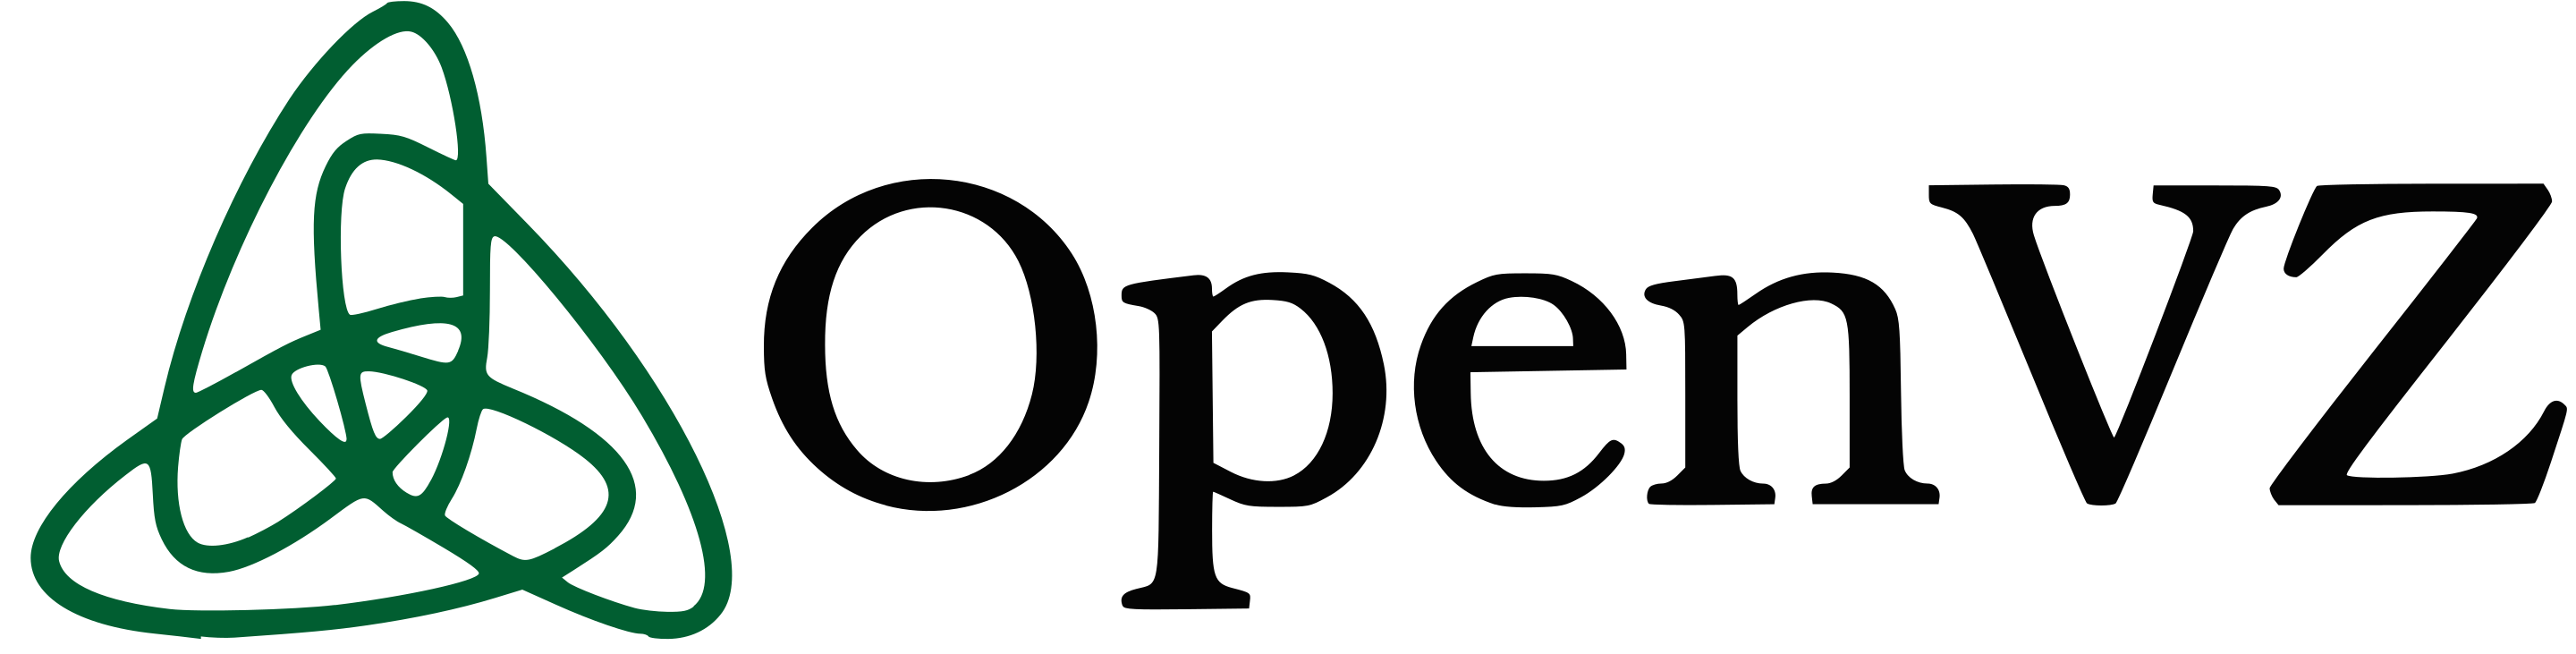 What is new in OpenVZ Virtualization – Sneak peek of OpenVZ 8 and OpenVZ 9 - HostNamaste